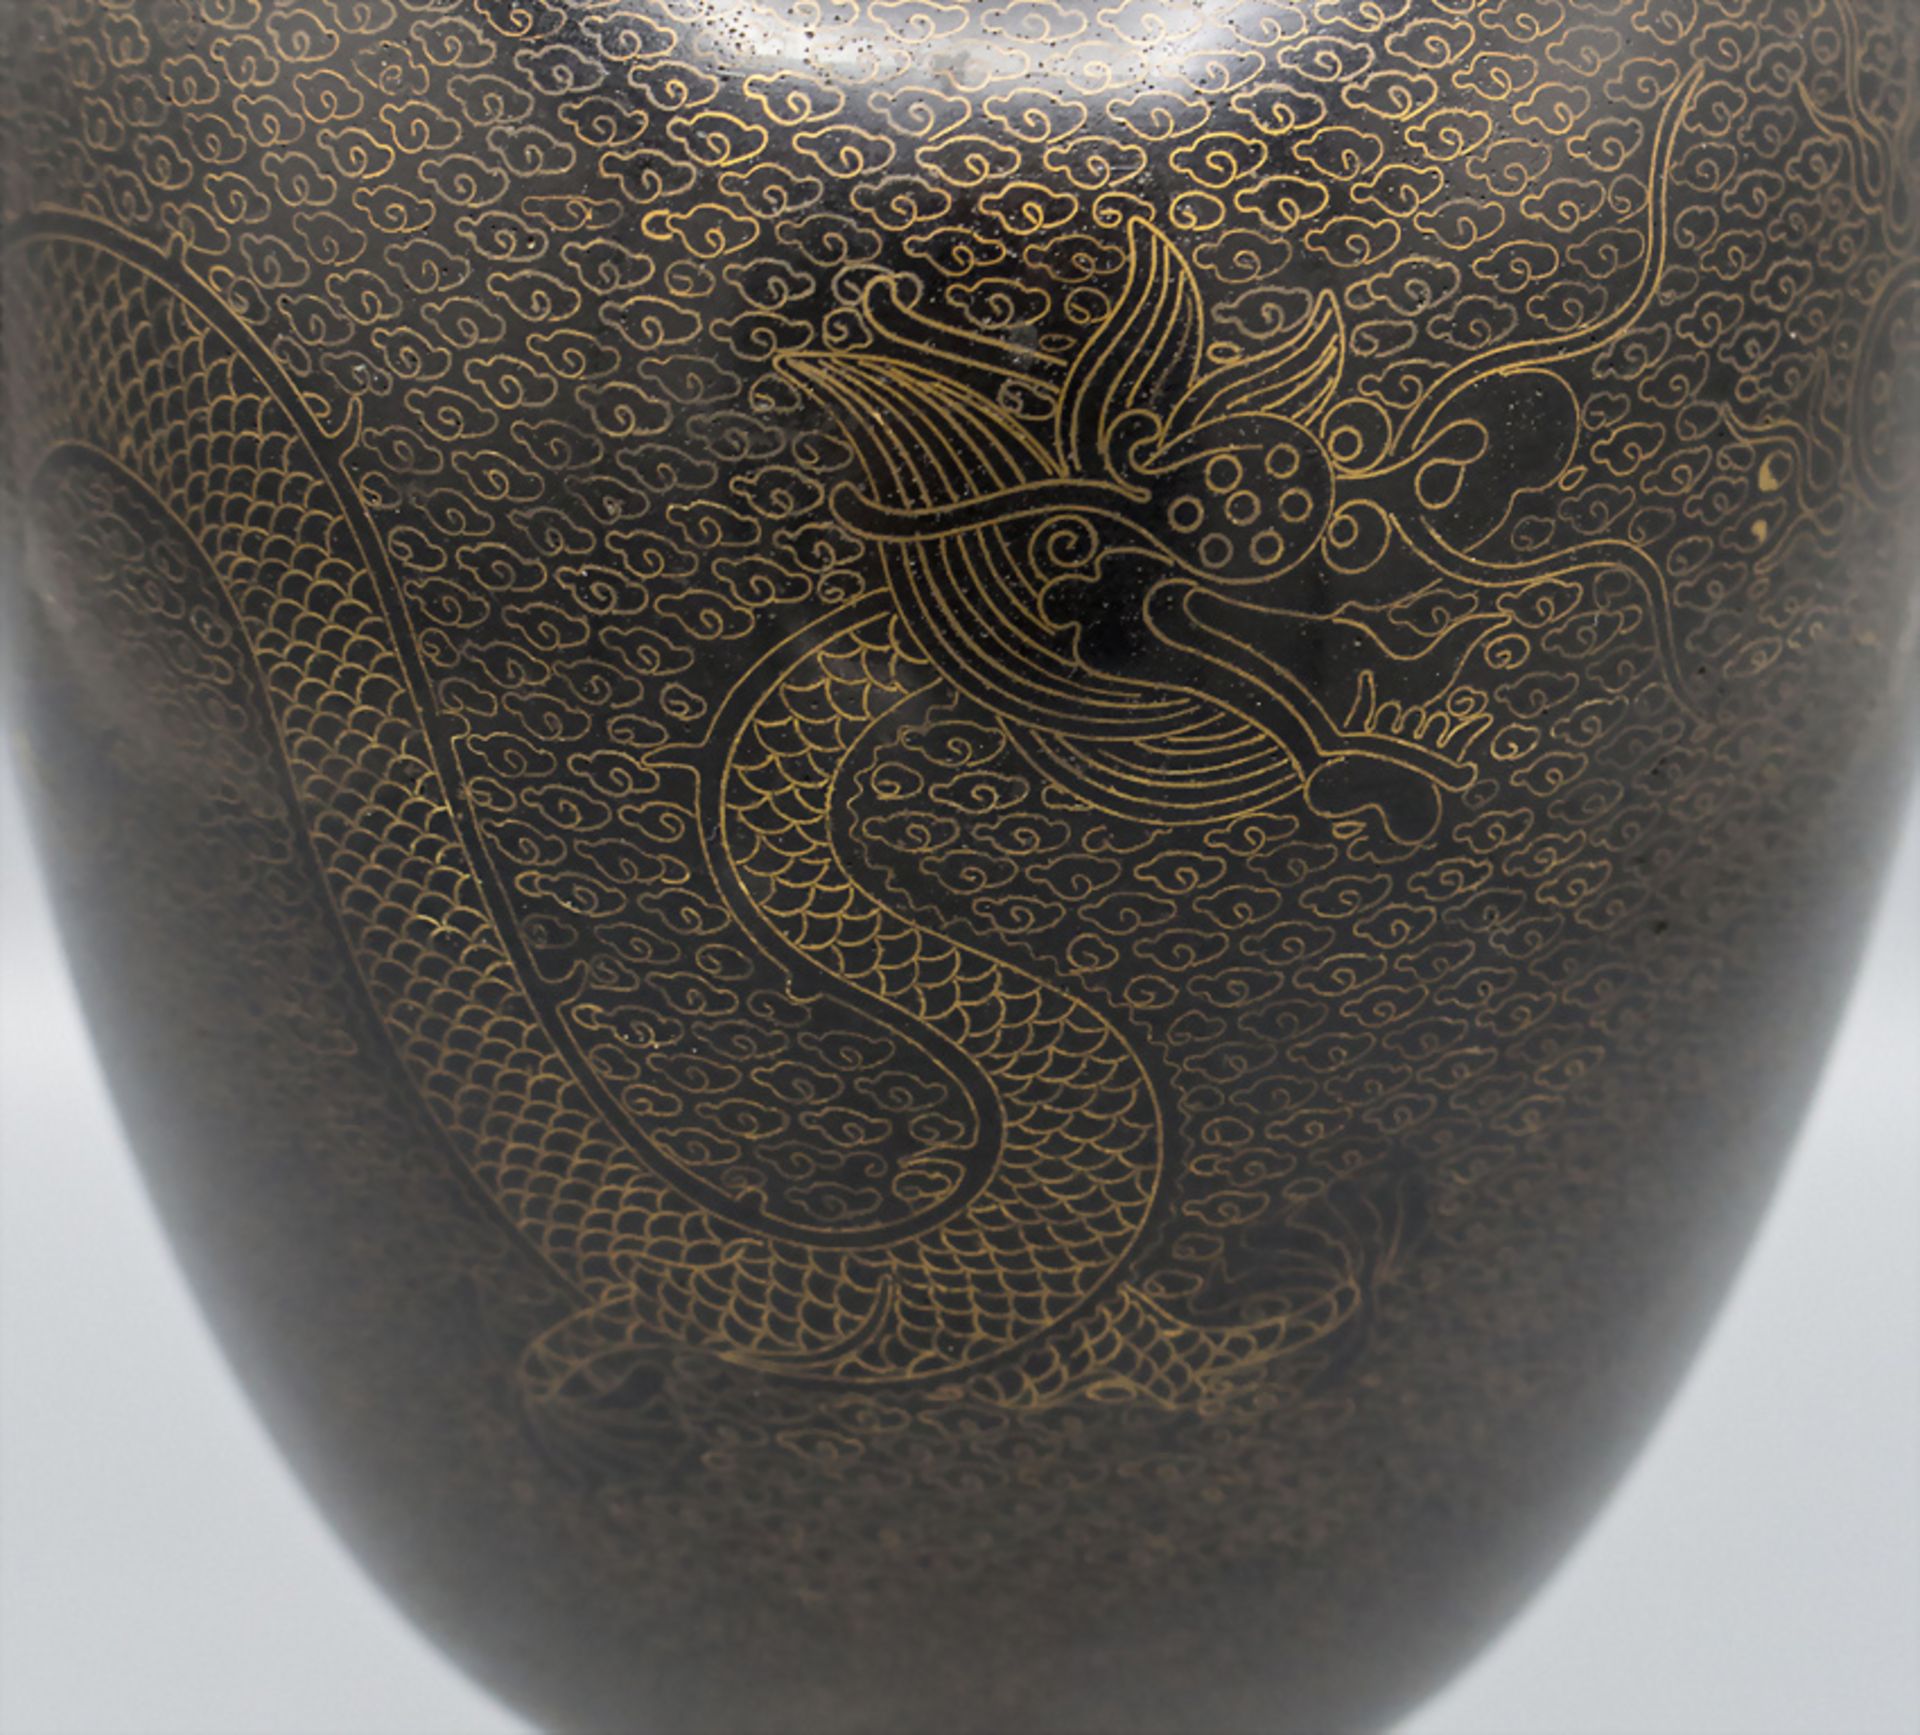 Cloisonné-Deckelvase / A cloisonné lidded vase, China, späte Qing Dynastie (1644-1911) - Bild 3 aus 6